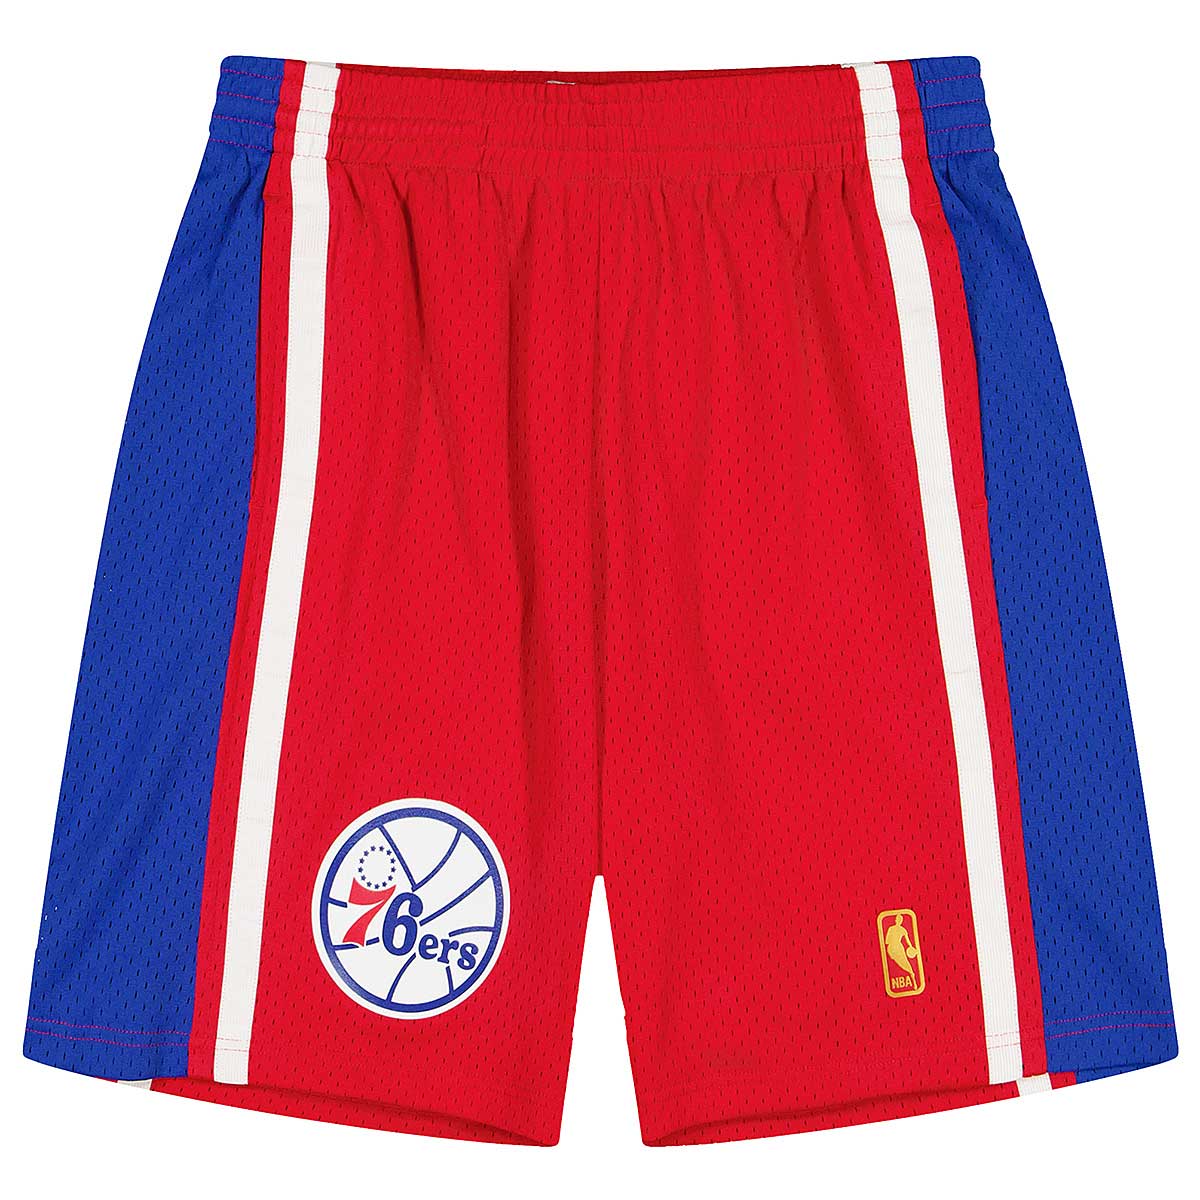 NBA Shorts Vintage Basketball Shorts Knicks Lakers 76ers 